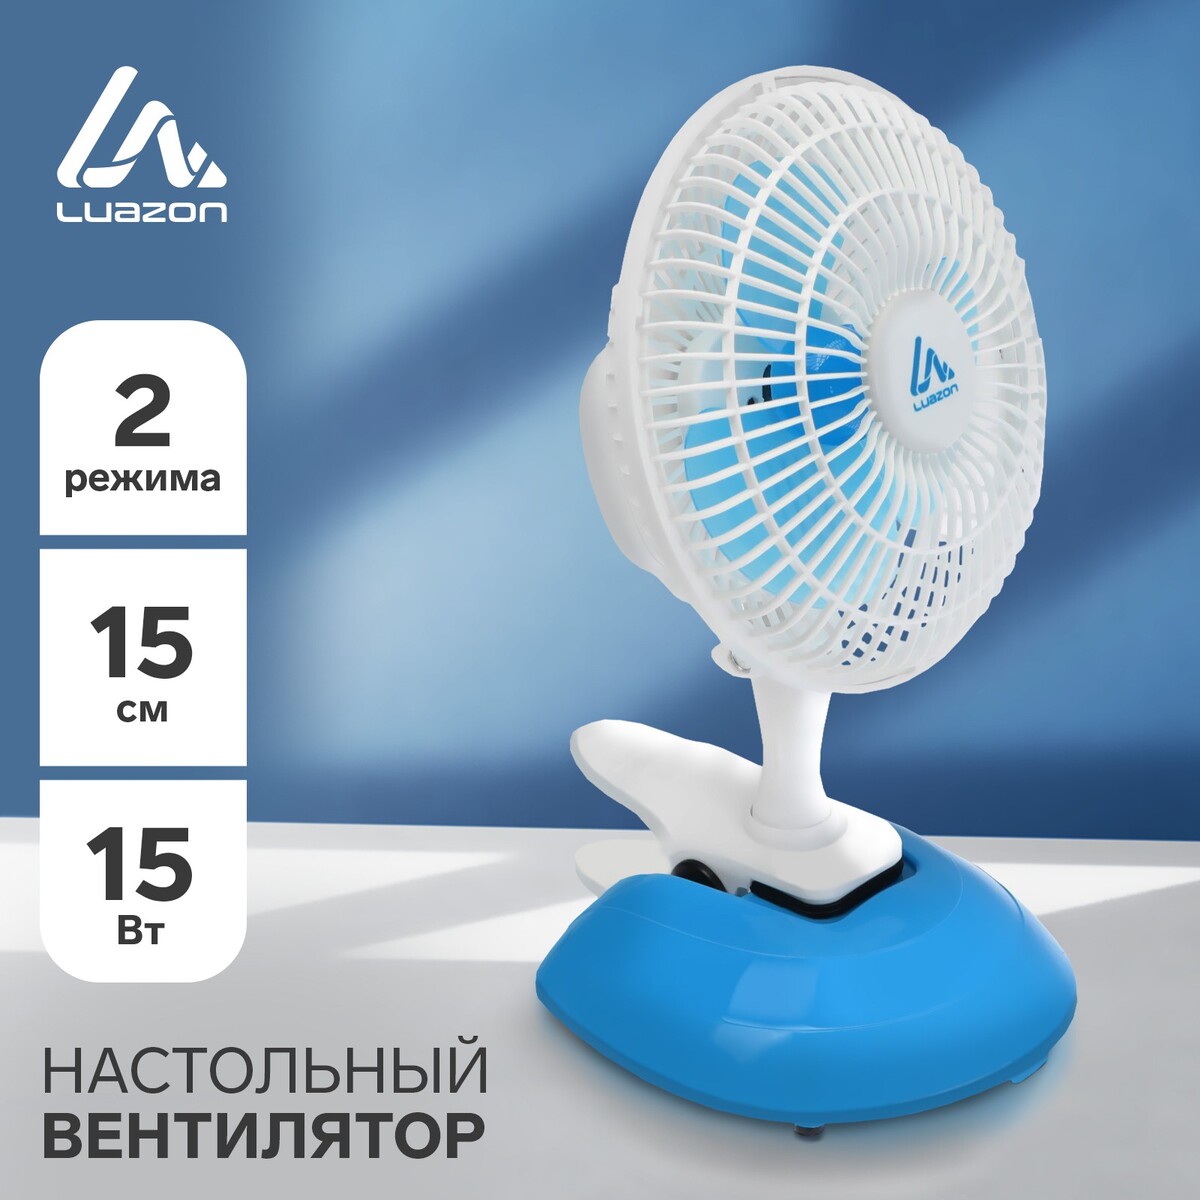 Вентилятор luazon lof-04, настольный, 15 вт, 15 см, 2 режима, пластик, бело-голубой вентилятор для корпуса cooler master sickleflow 120 argb white edition mfx b2dw 18npa r1